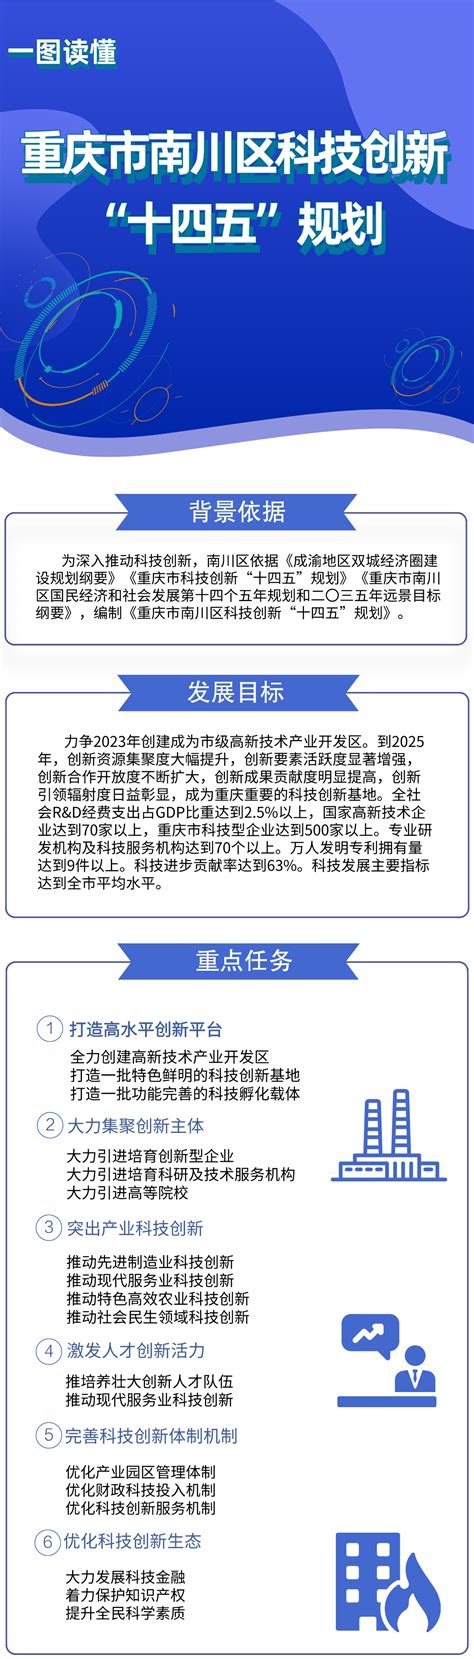 十八大以来重庆科技发展报告 - 重庆市统计局